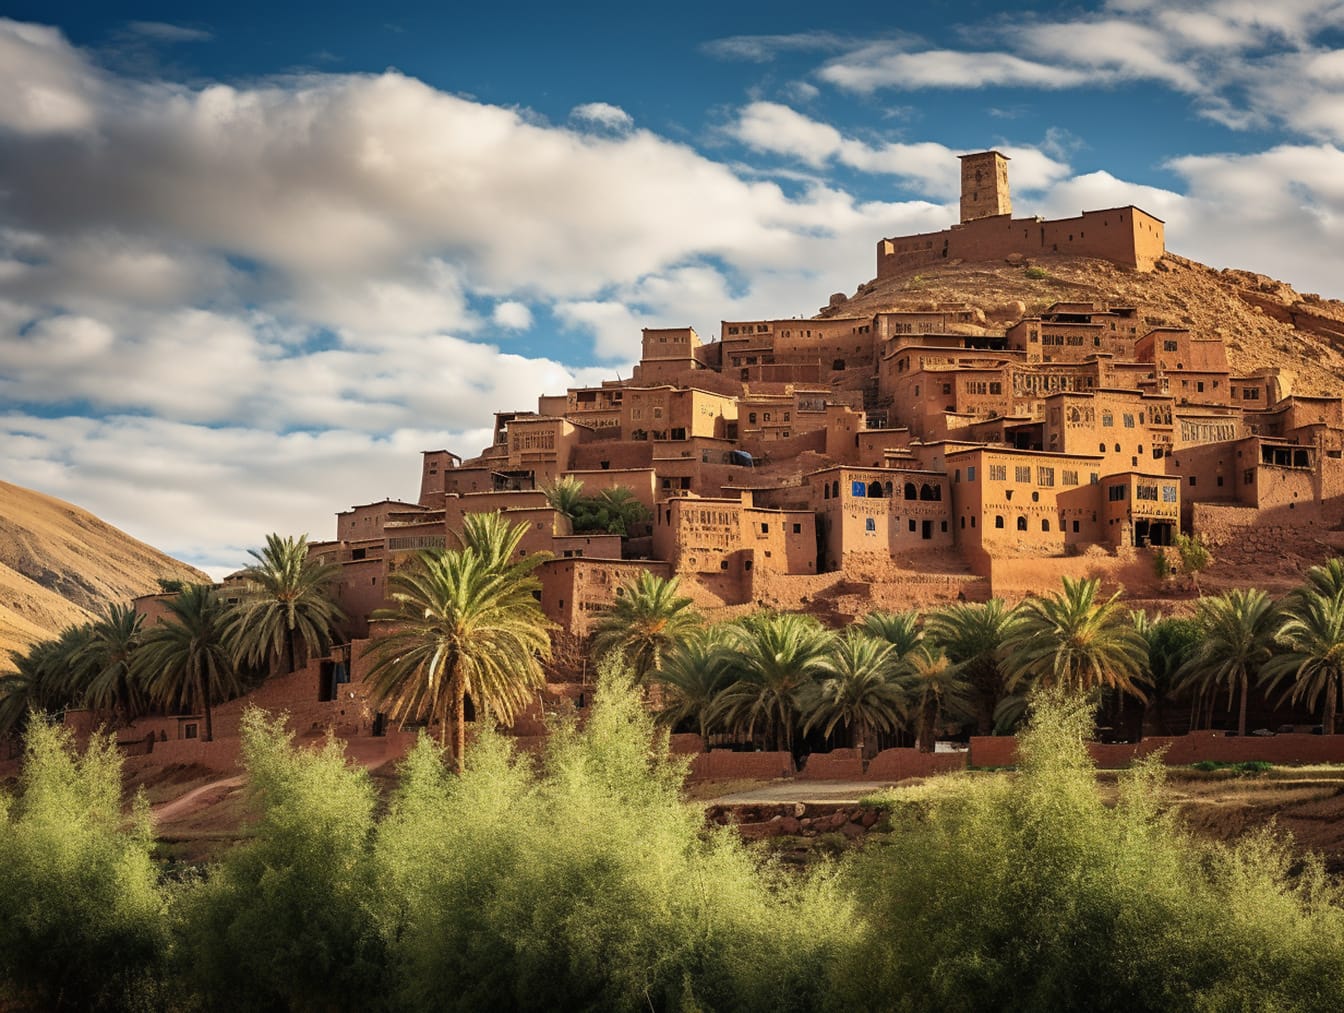 Zabytkowe średniowieczne domy w wiosce na szczycie wzgórza w Maroku